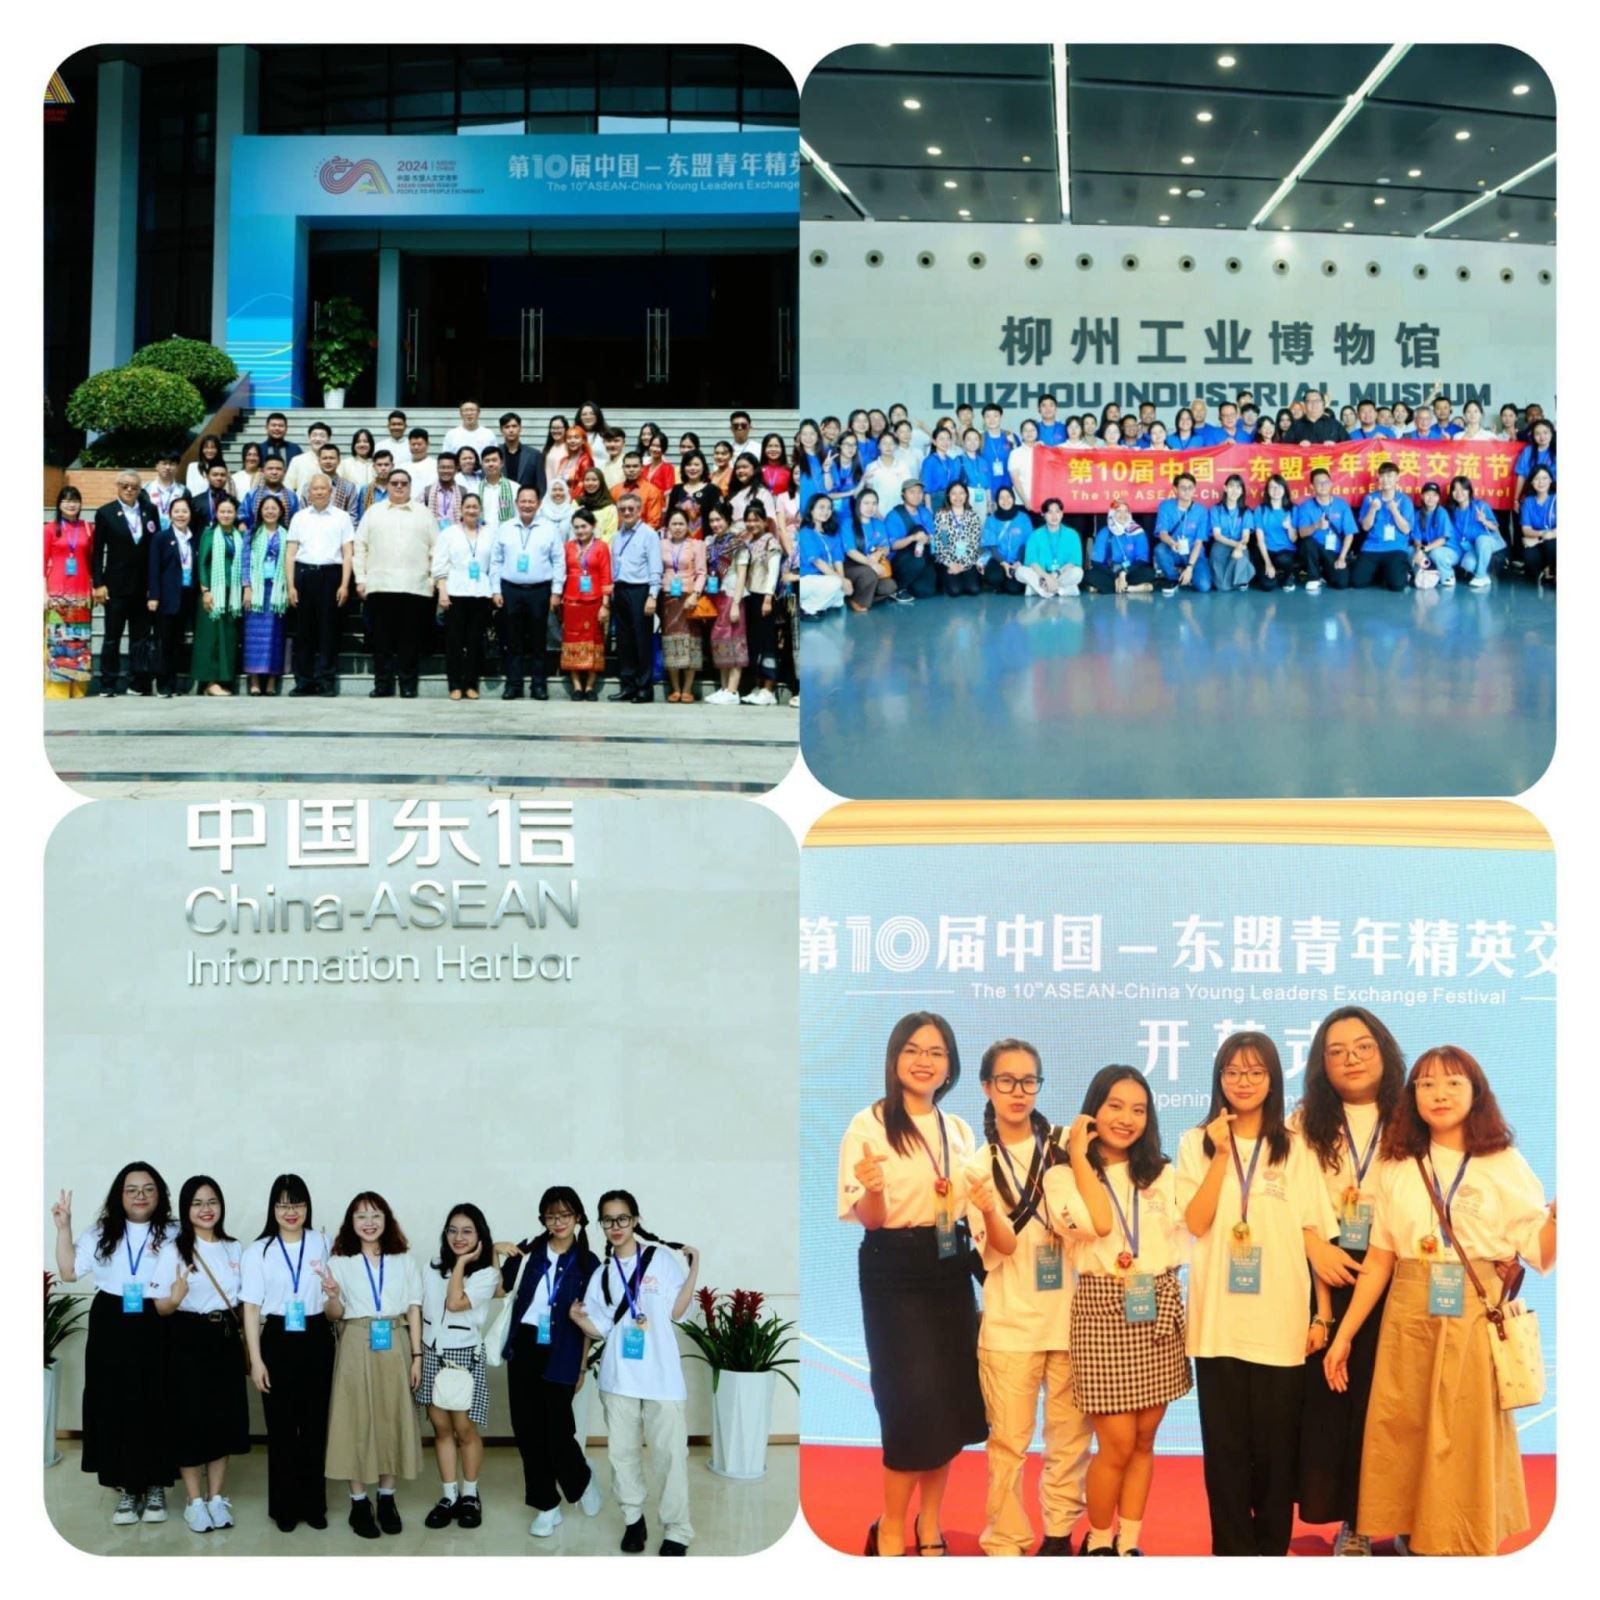 Liên hoan giao lưu lãnh đạo trẻ ASEAN – Trung Quốc lần thứ 10